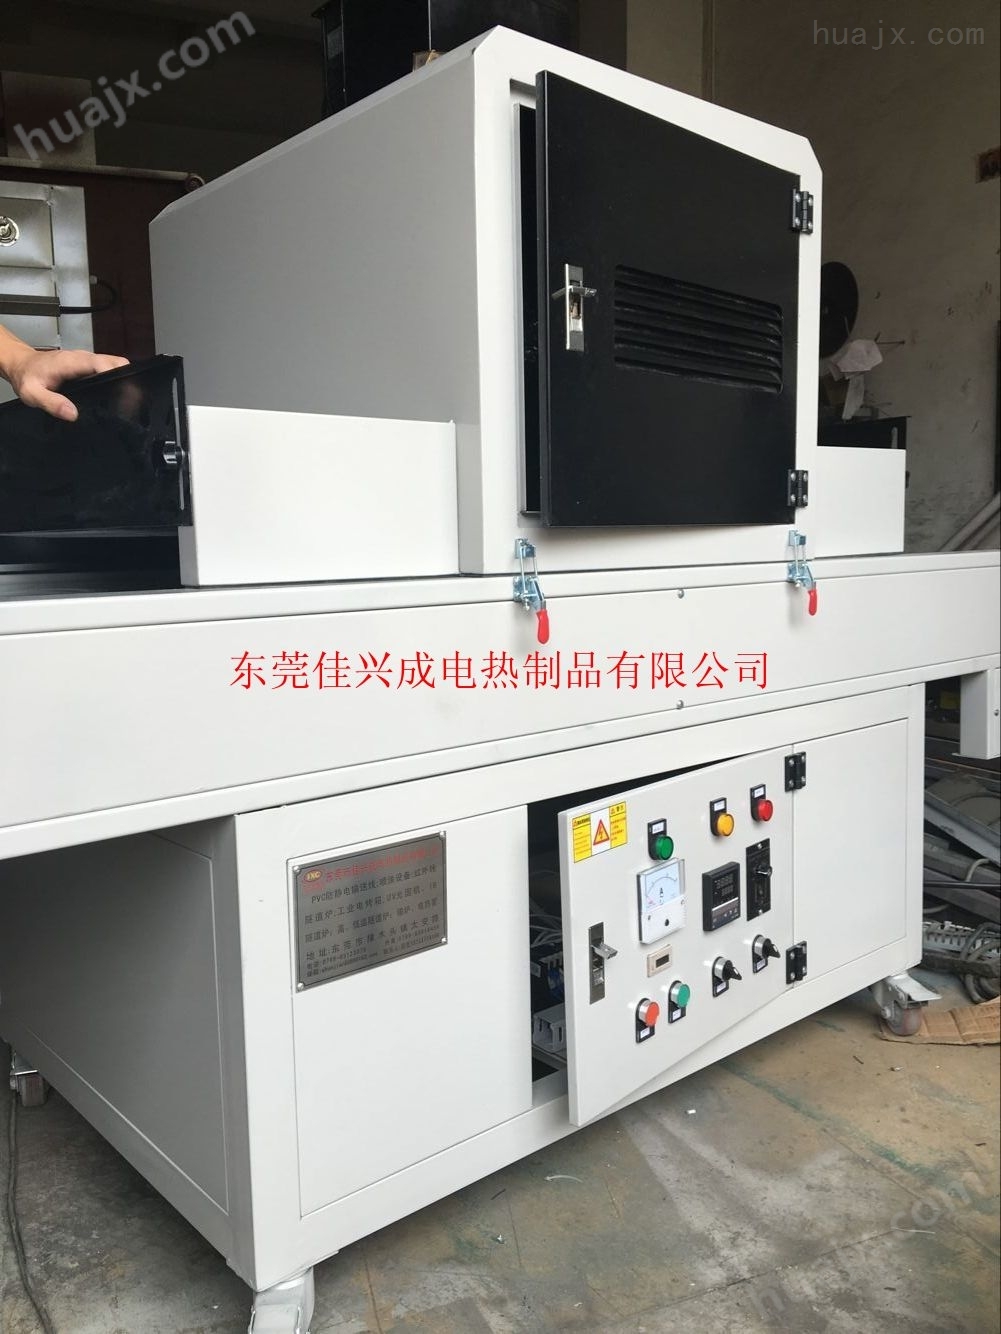 厂家生产各种精密UV炉,低价批发UV塑胶材料固化机